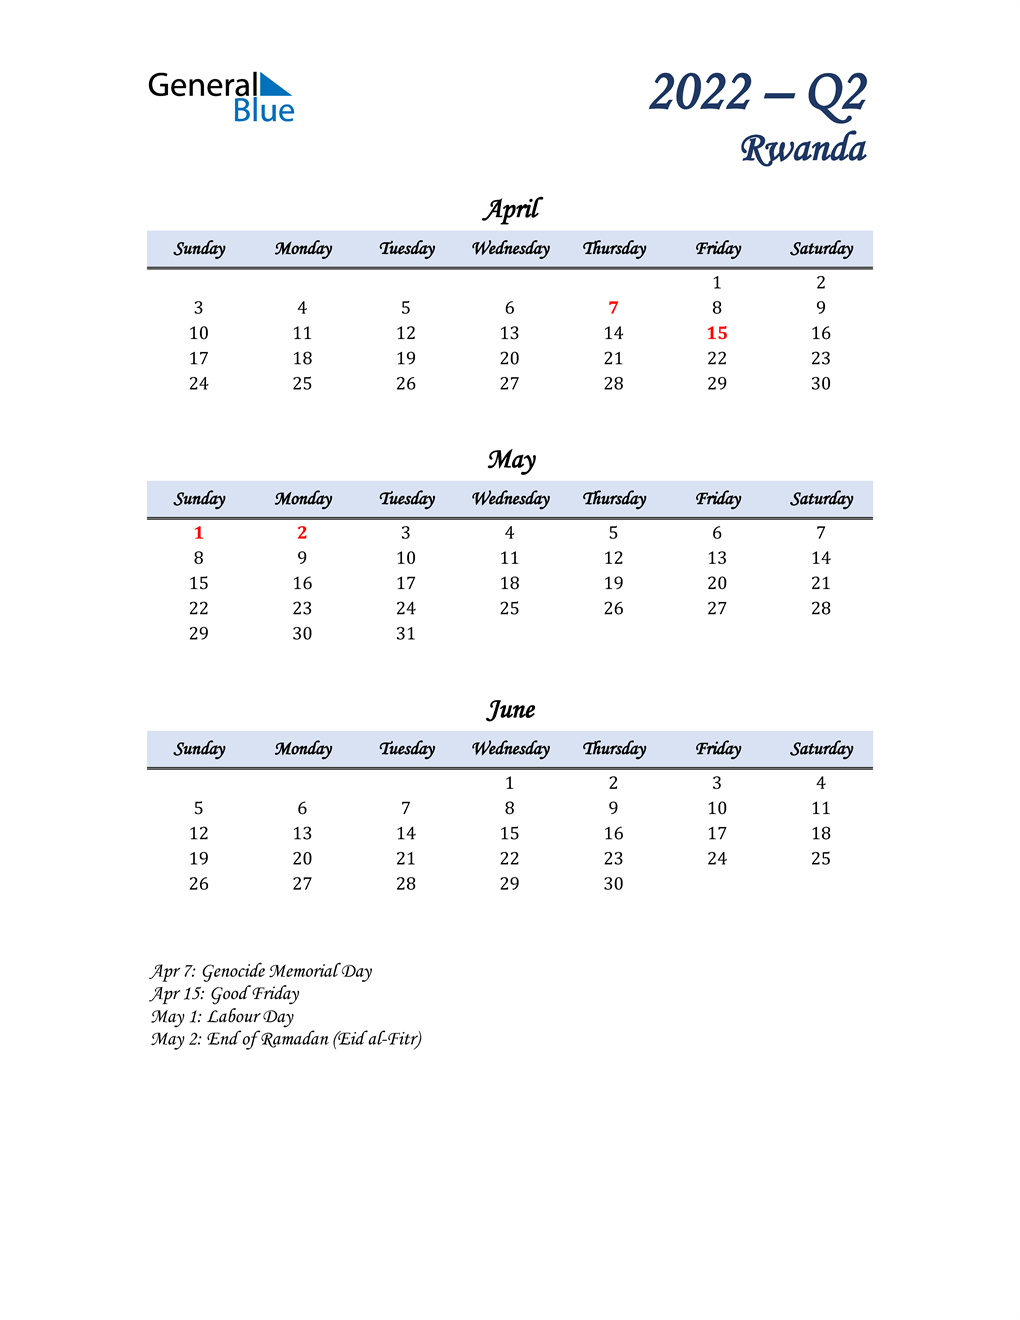  April, May, and June Calendar for Rwanda